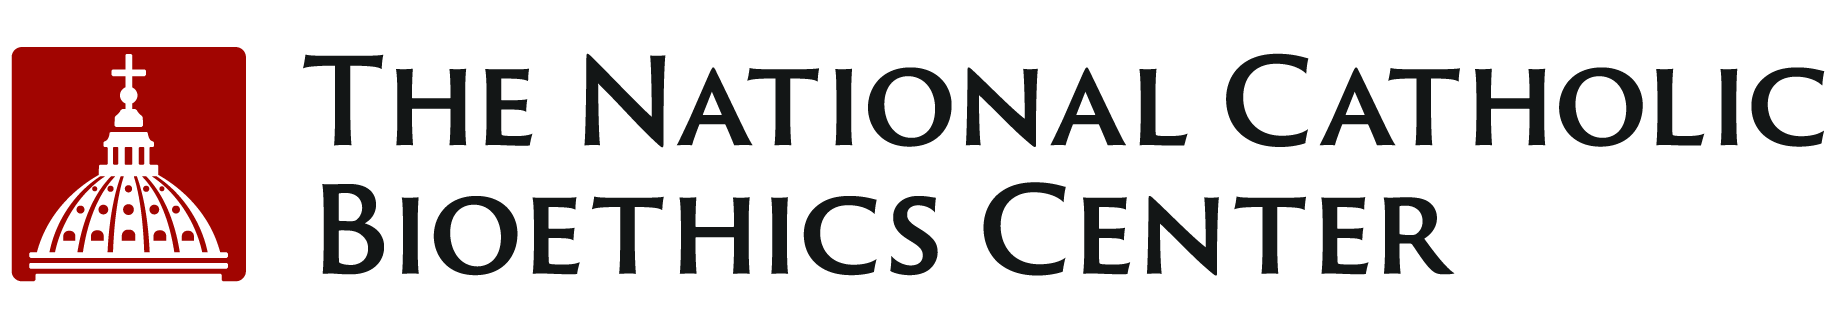 The National Catholic Bioethics Center